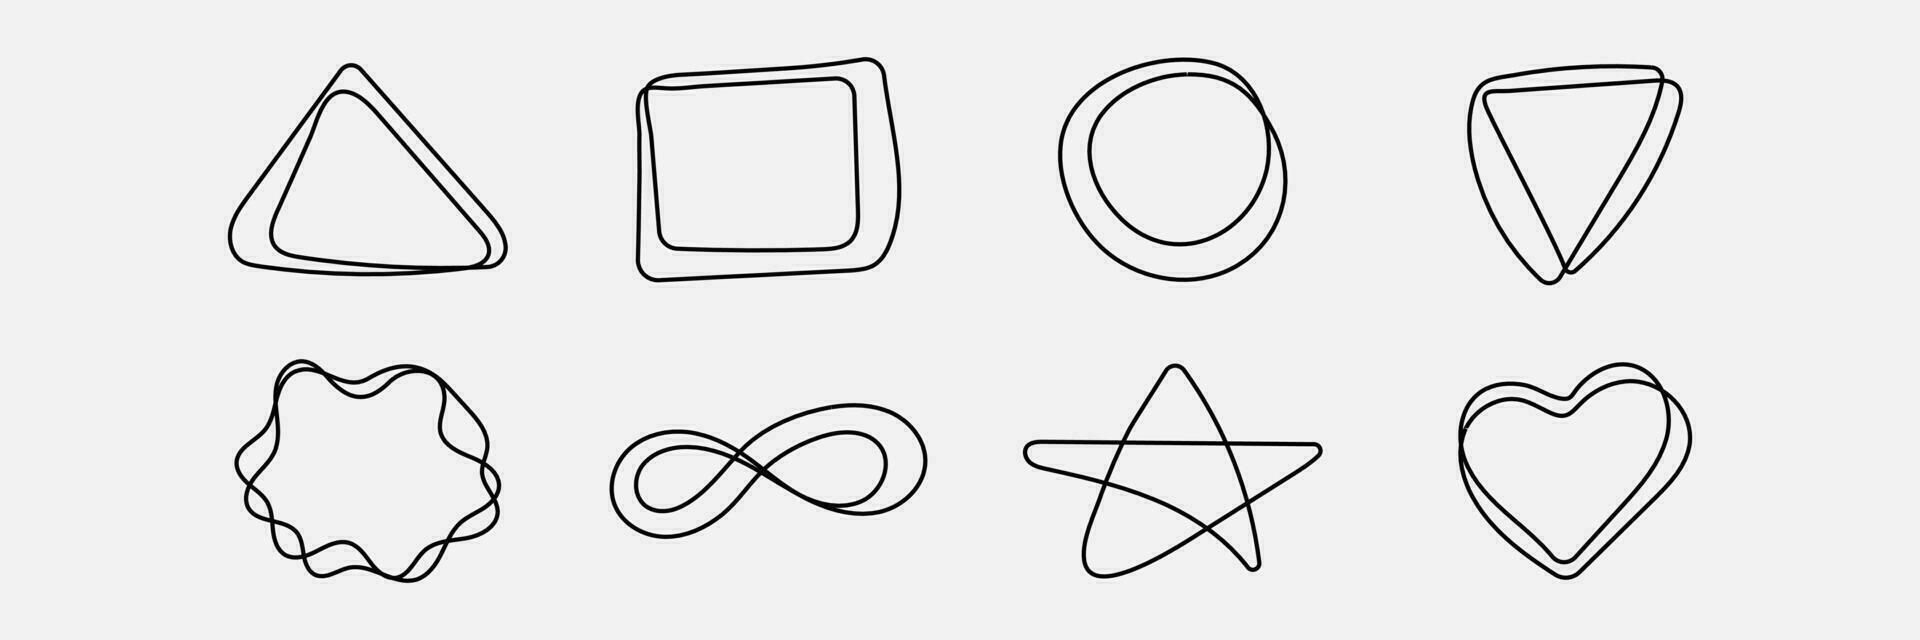 garabatear formas mano dibujado frontera o marco, decorativo elemento para presentación. Escribiendo triángulo, corazón, círculo, estrella y cuadrado. vector ilustración